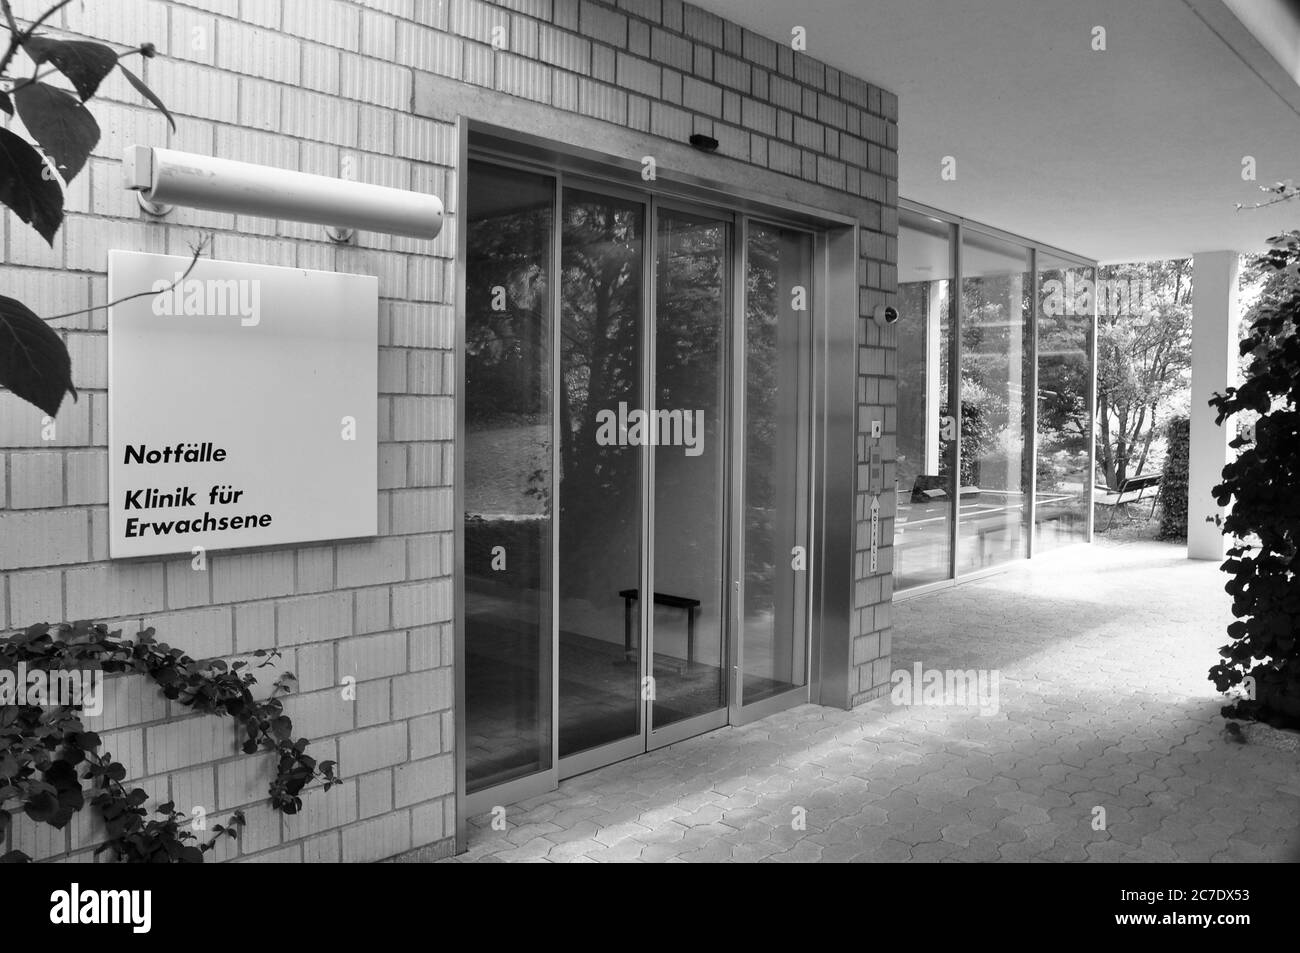 Der Notfall-Eingang des Schweiz. Epilepsie-Zentrums. L'entrée d'urgence du centre suisse de l'épilepsie Banque D'Images